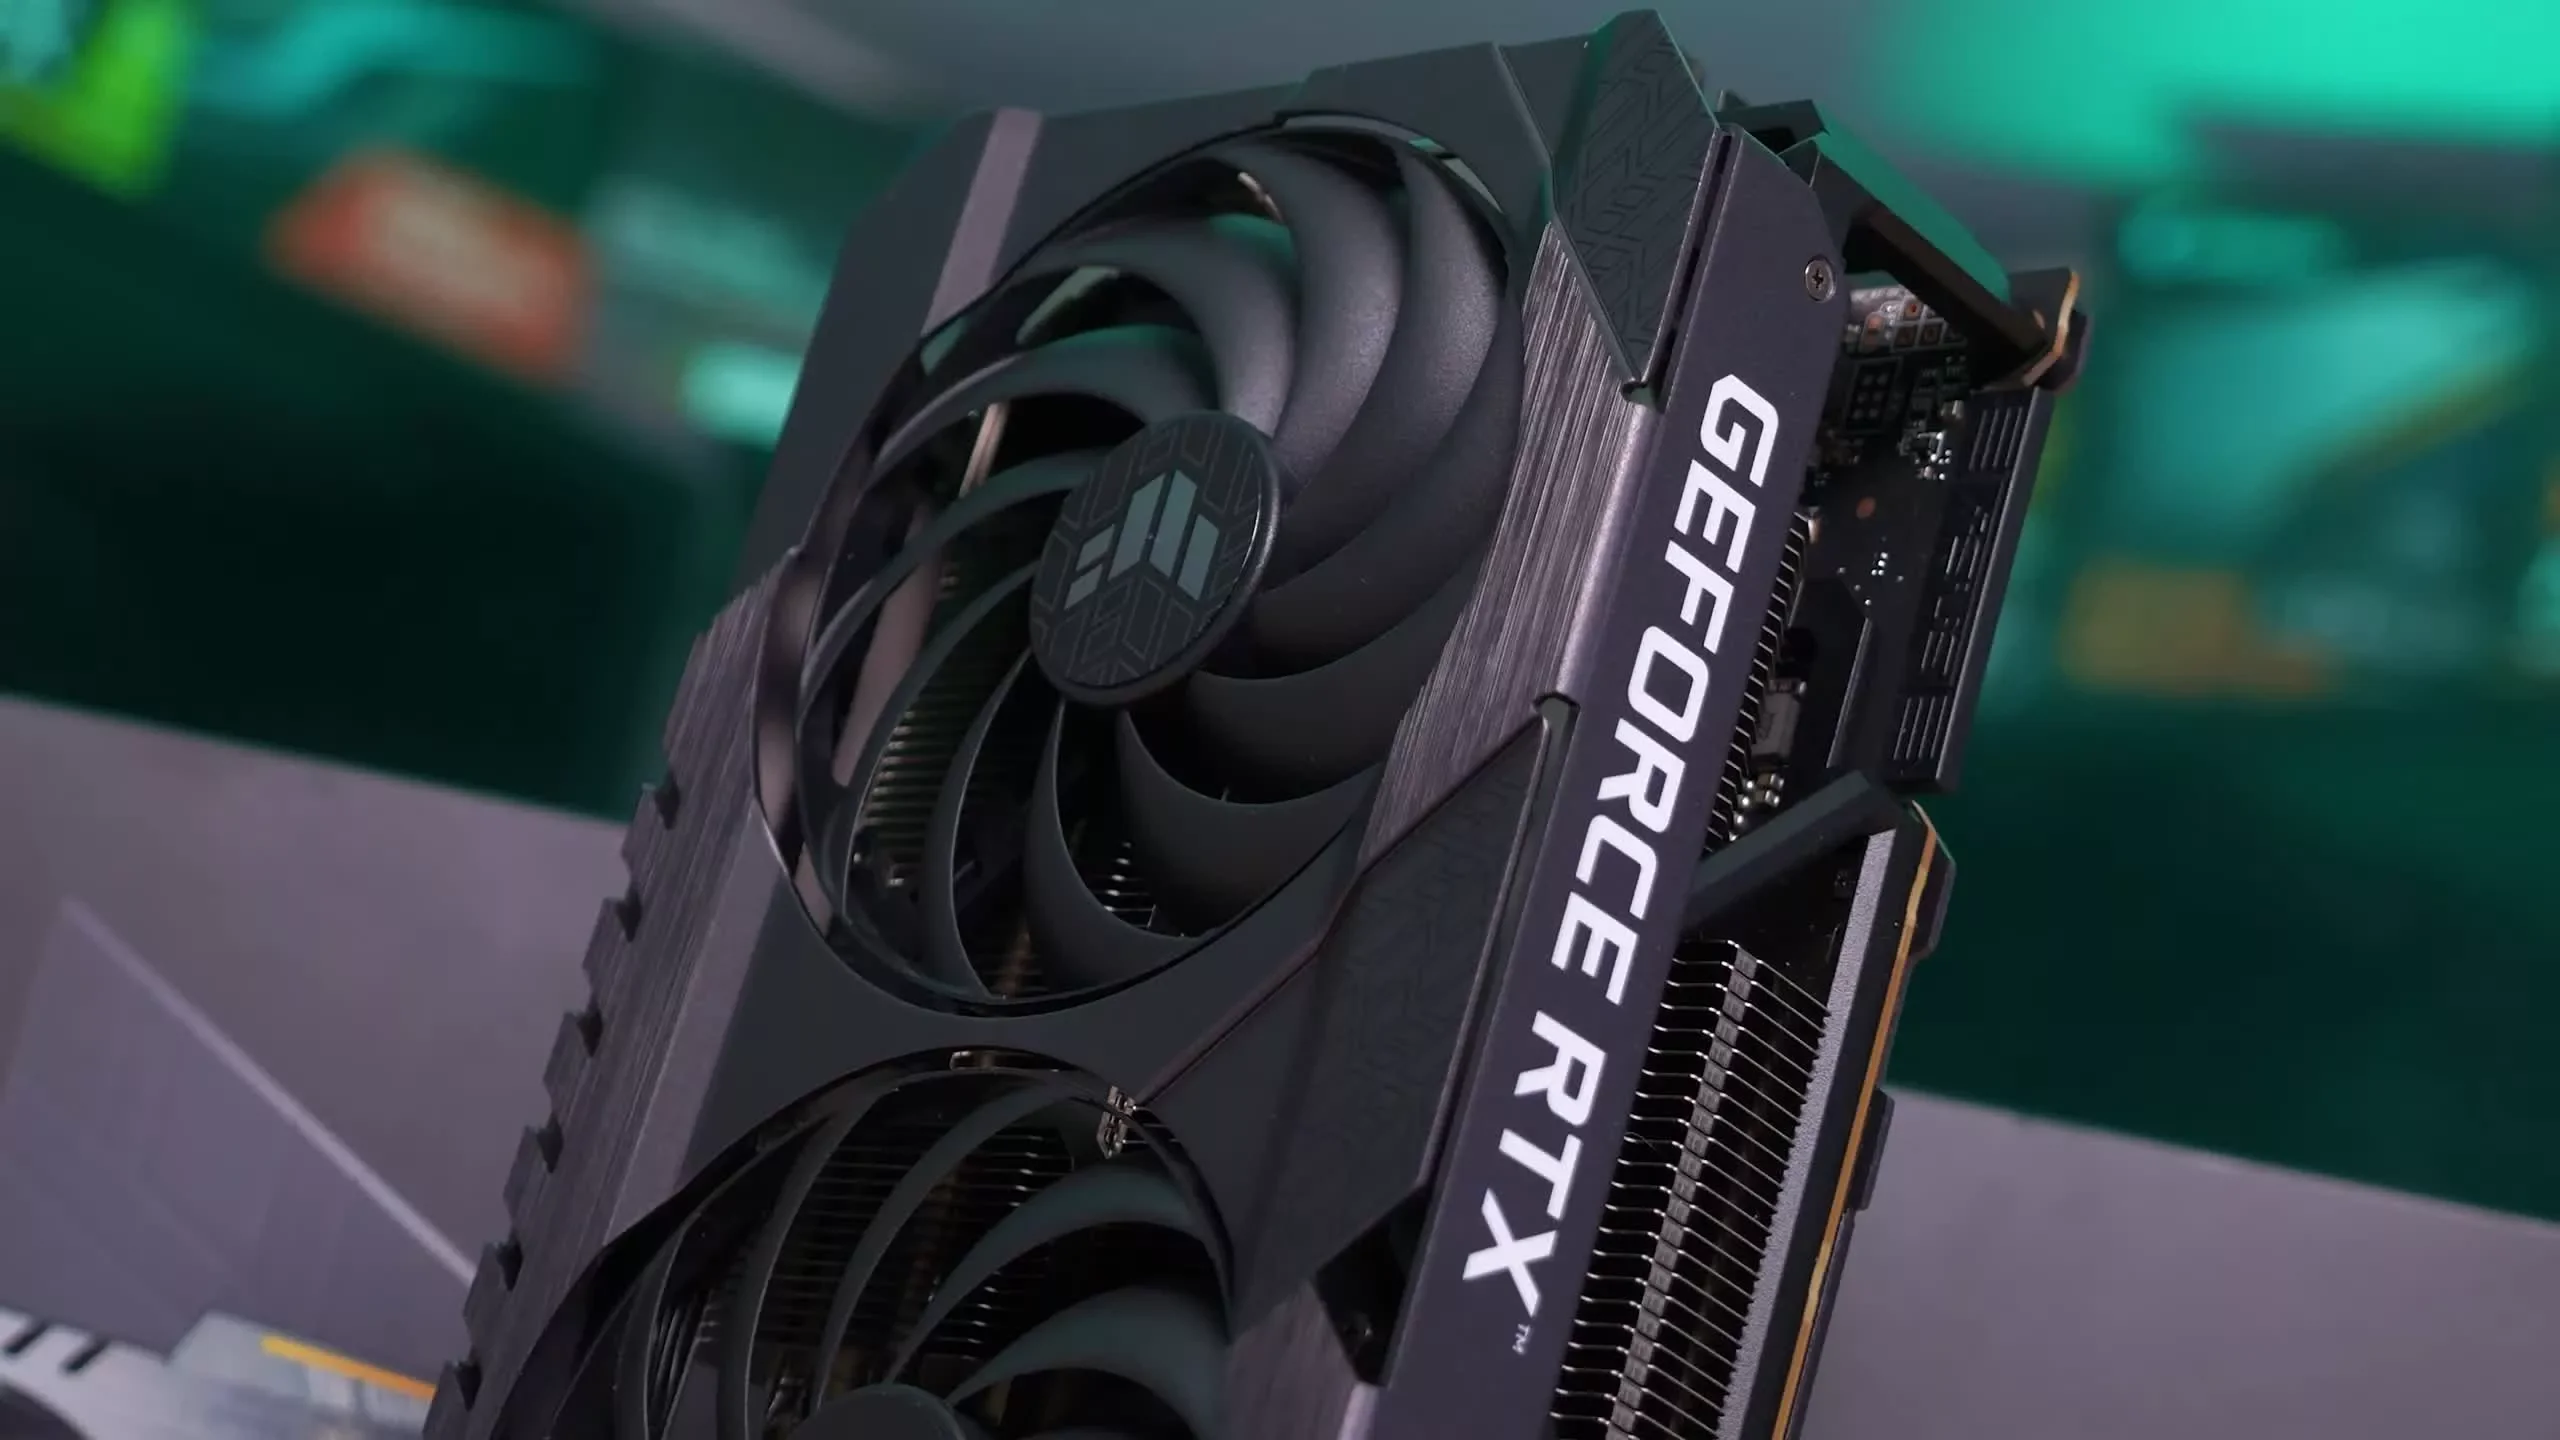 Η Nvidia GeForce RTX 4090 θα προσφέρει διπλάσια απόδοση από την RTX 3090